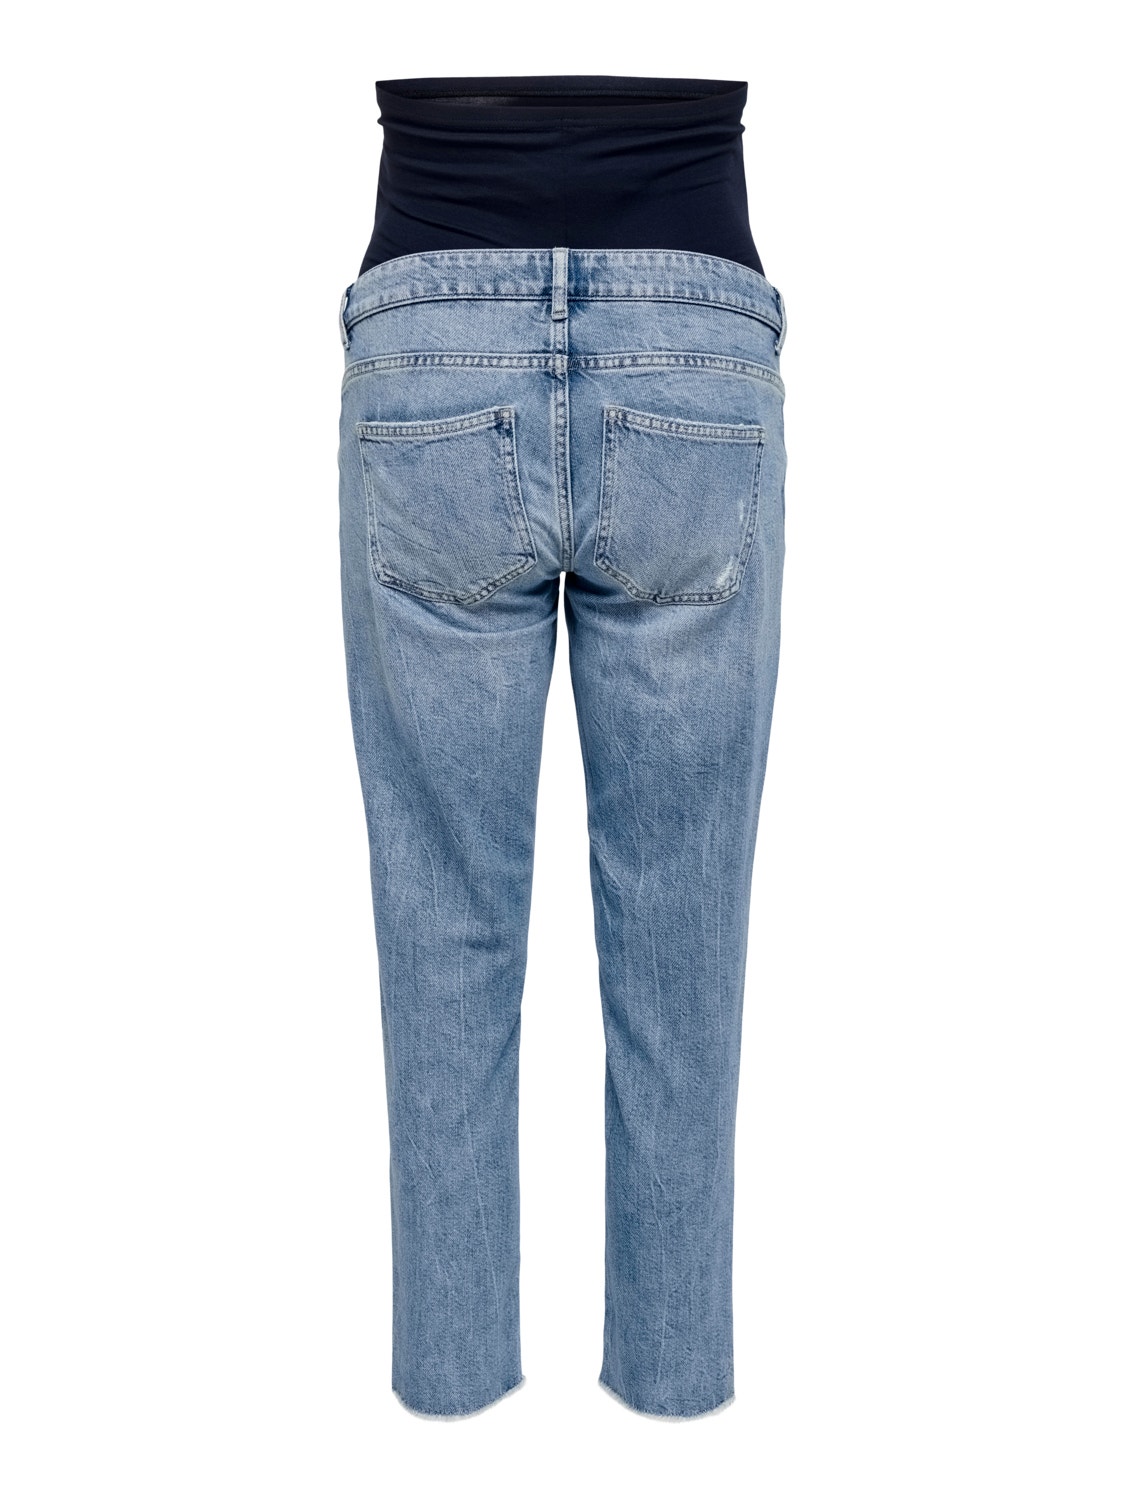 ONLY Jeans Straight Fit Taille haute Ourlé destroy -Light Medium Blue Denim - 15257015